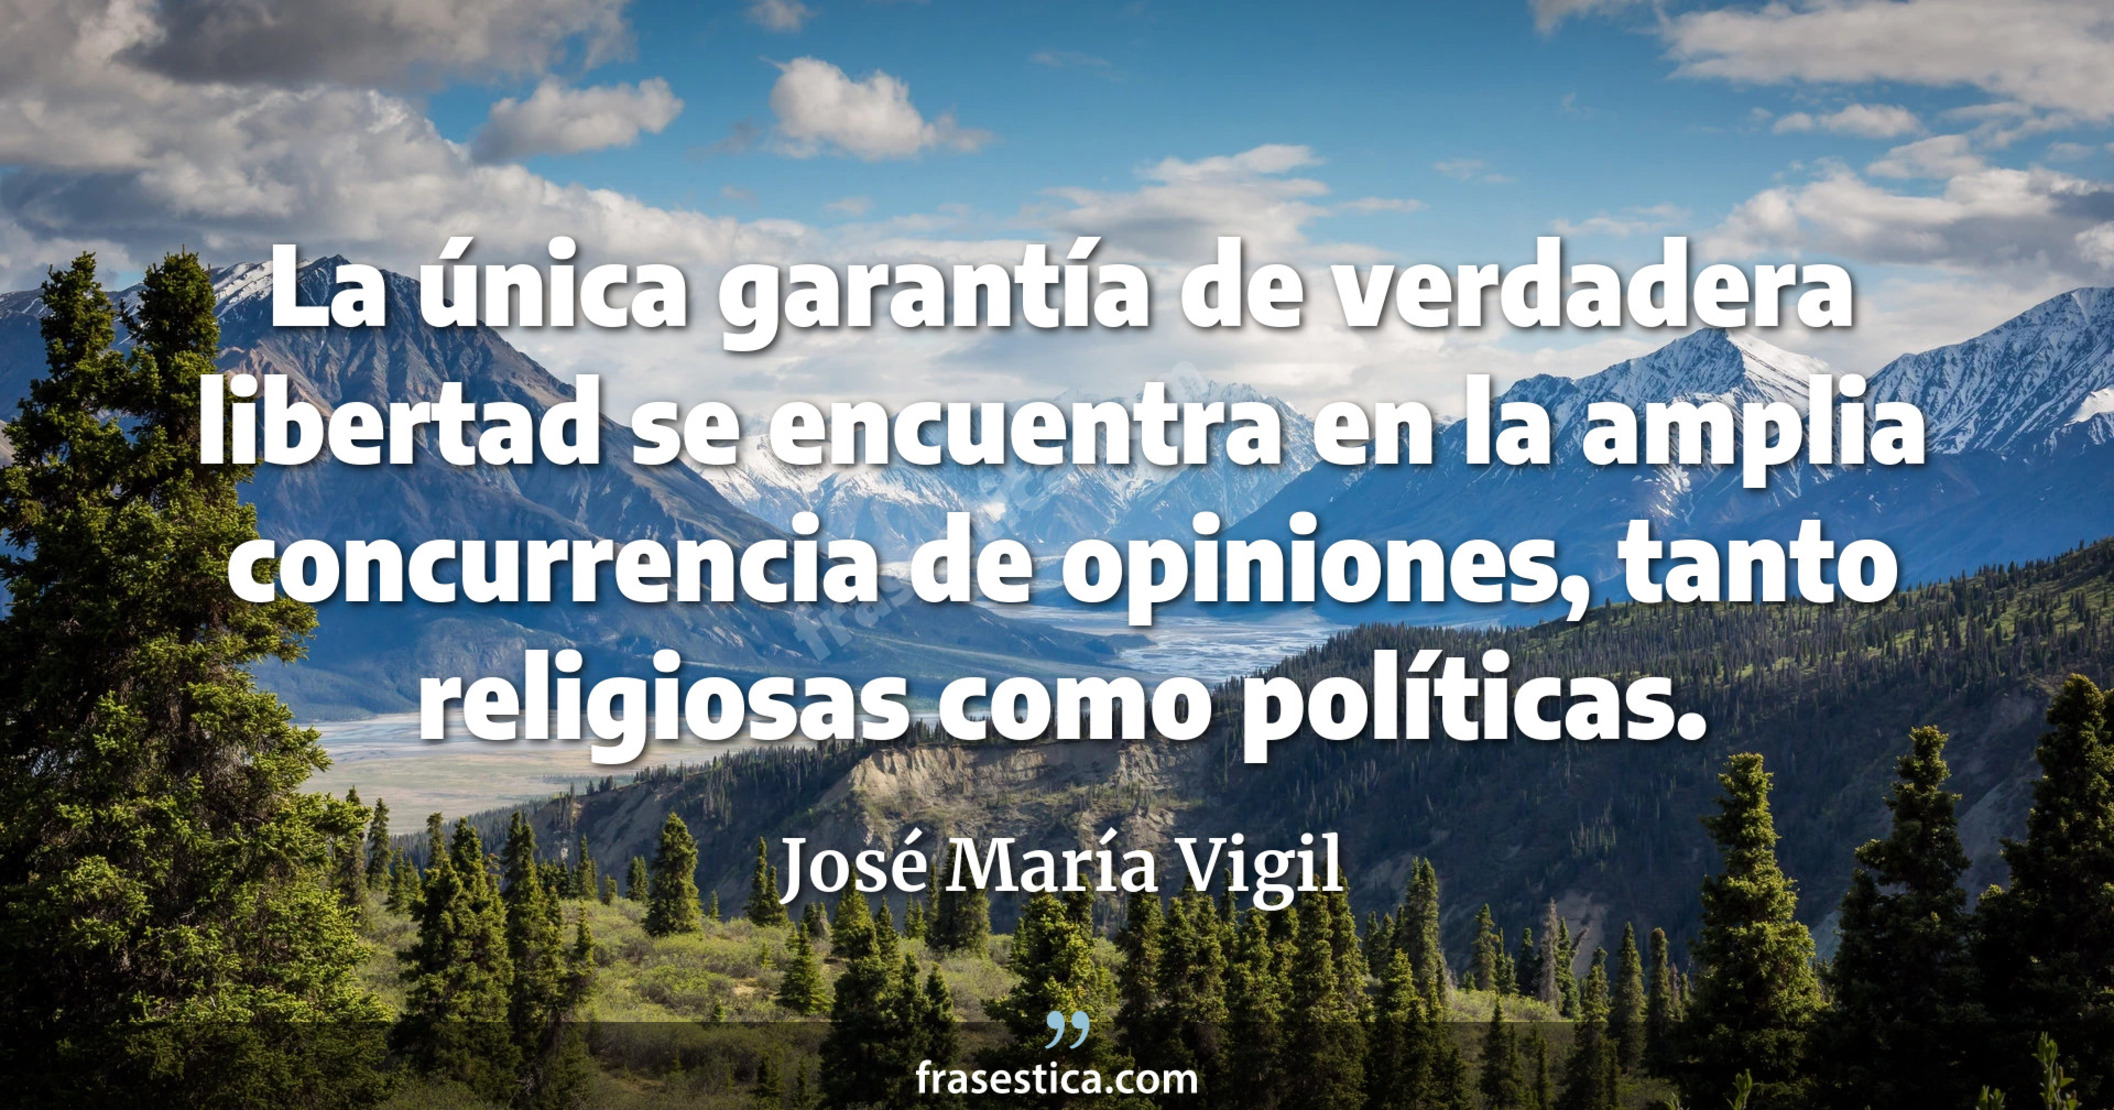 La única garantía de verdadera libertad se encuentra en la amplia concurrencia de opiniones, tanto religiosas como políticas. - José María Vigil